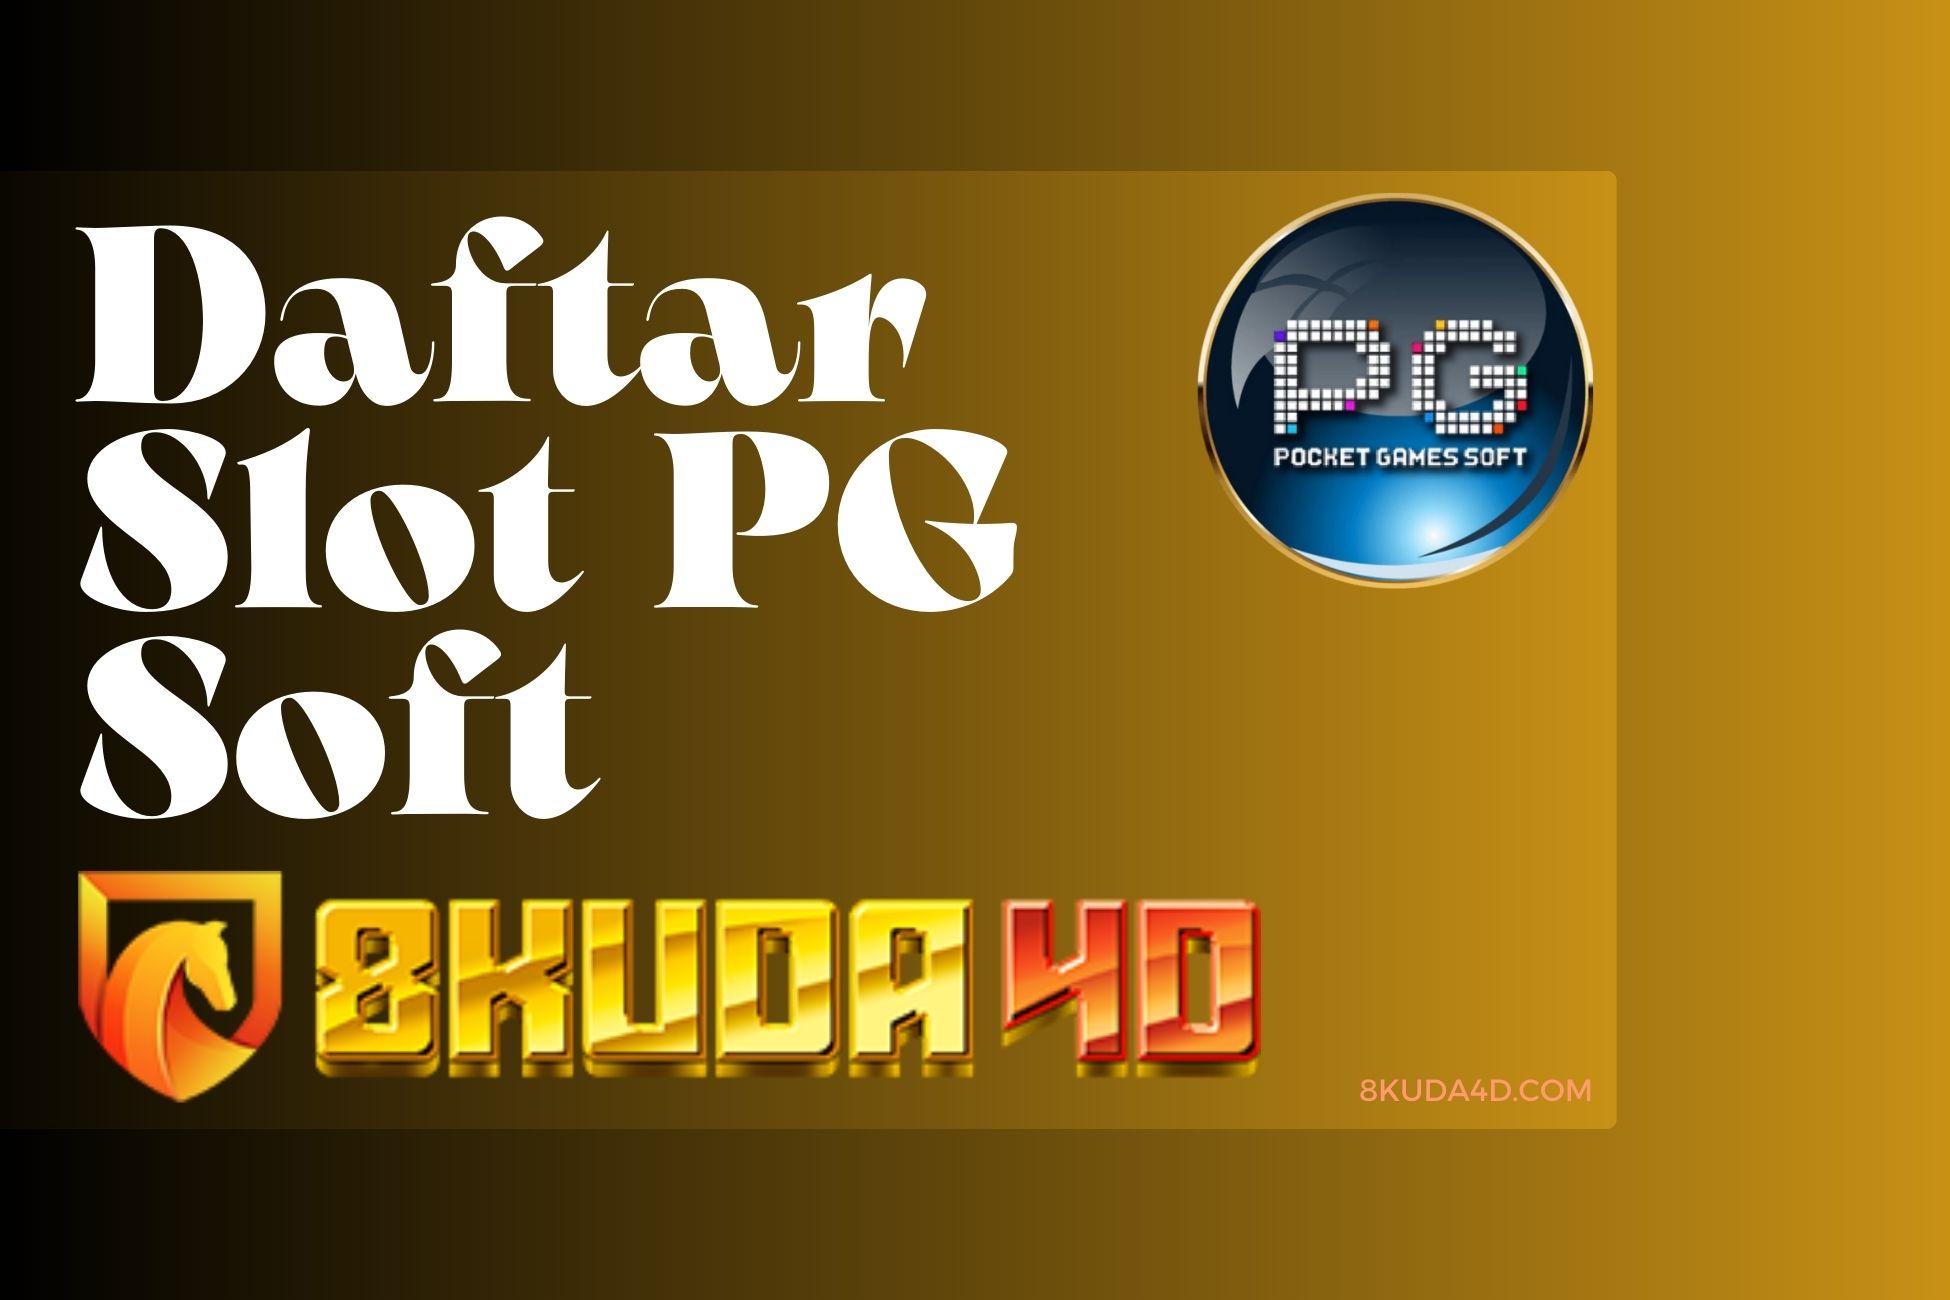 Daftar Slot PG Soft 8Kuda4D